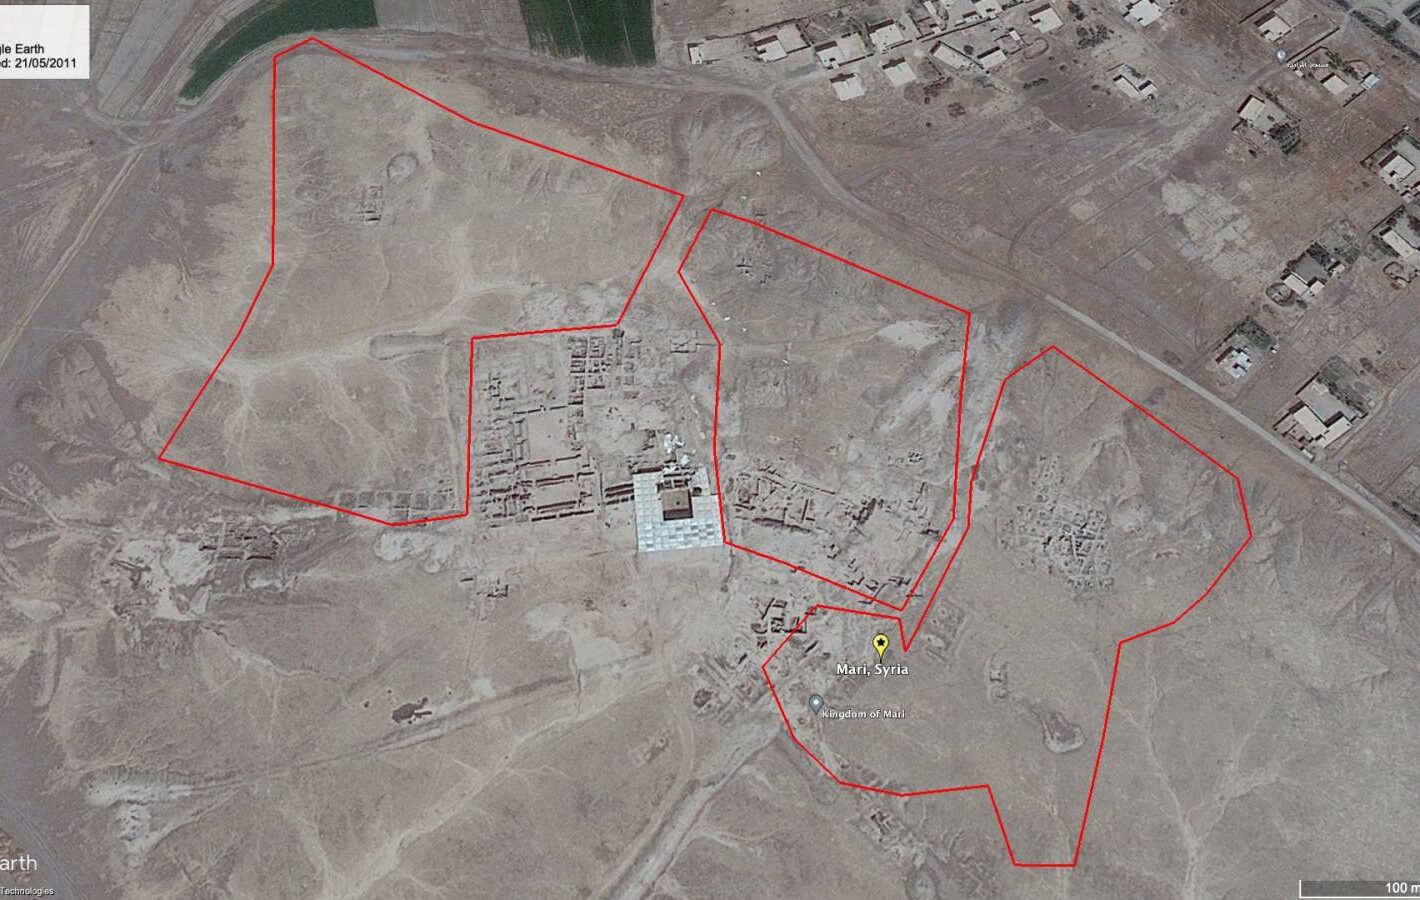 Satellite image of Mari, Syria